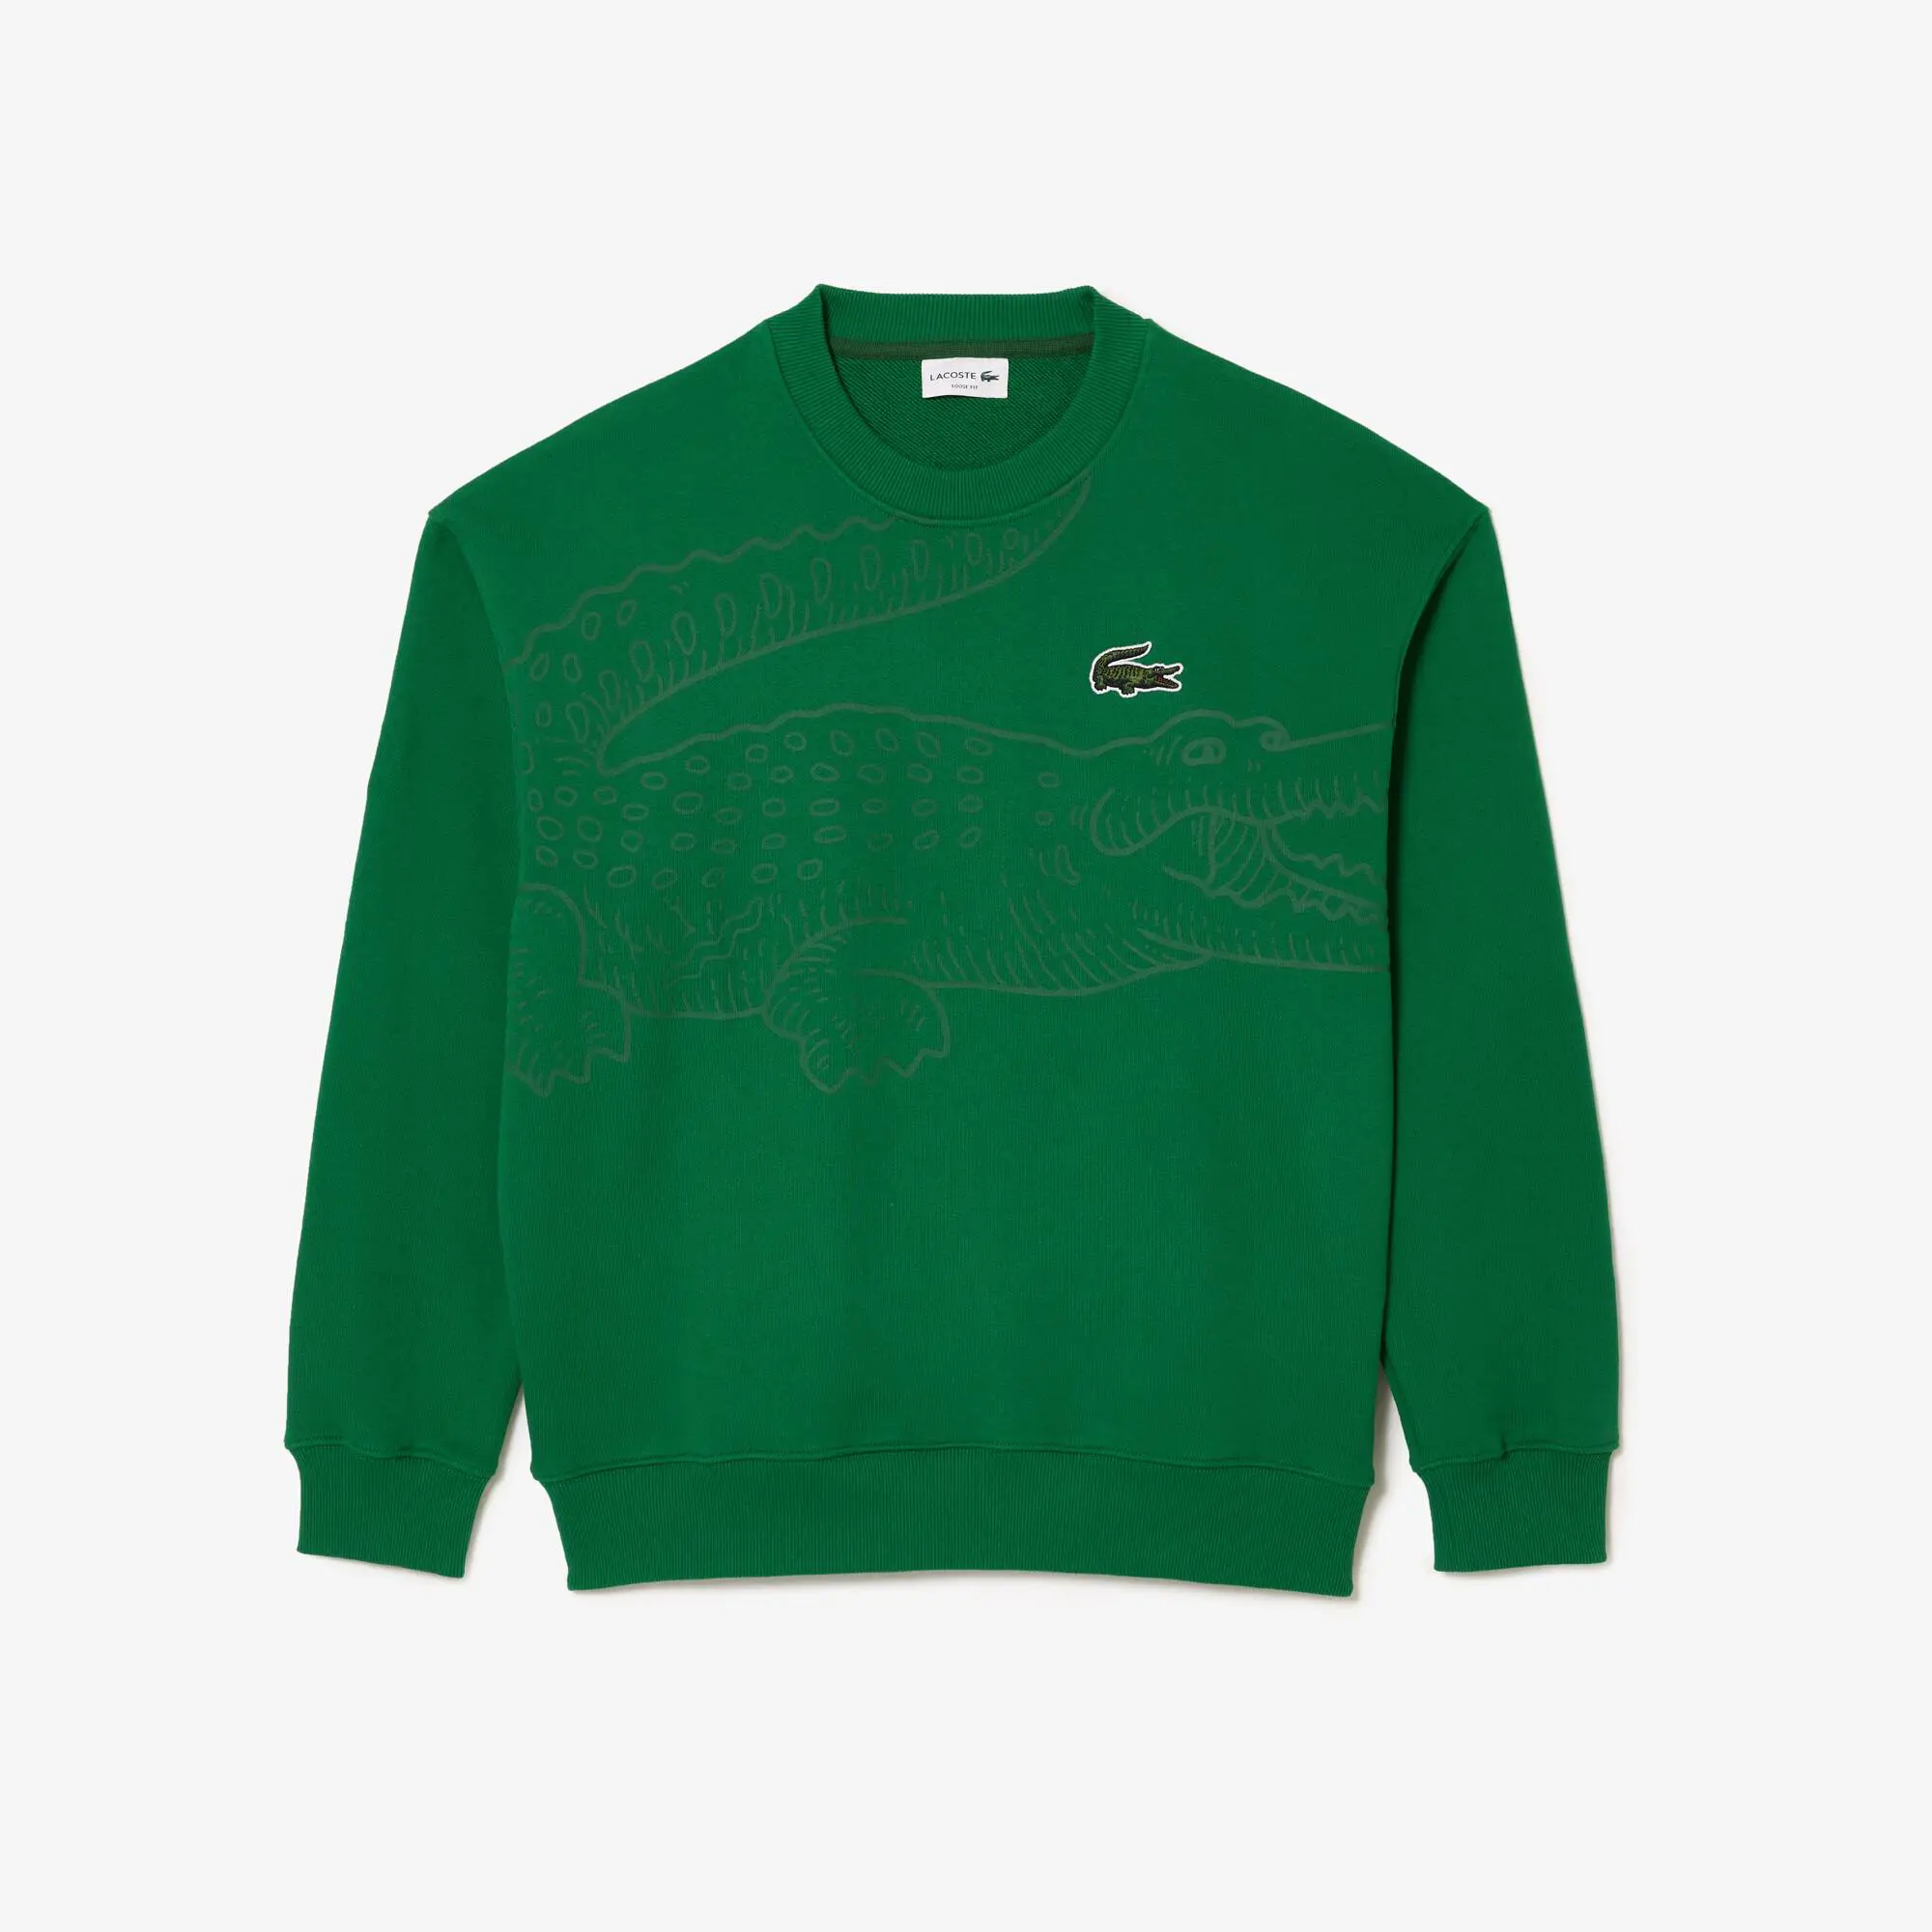 Lacoste Men’s Lacoste Round Neck Loose Fit Croc Print Jogger Sweatshirt. 2